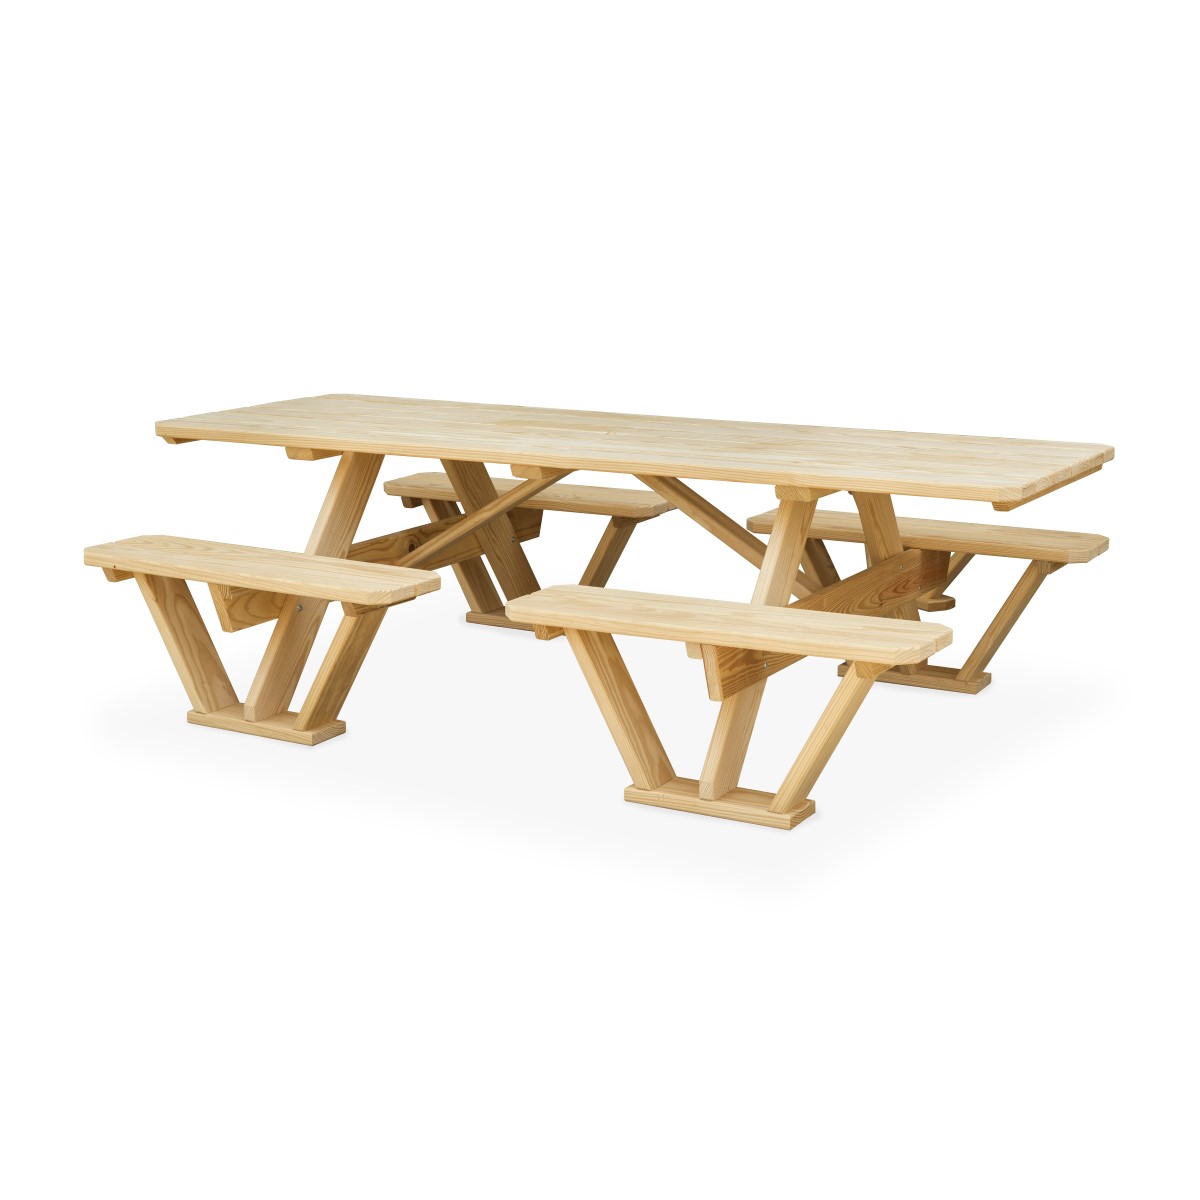 Split Bench Picnic Table Image